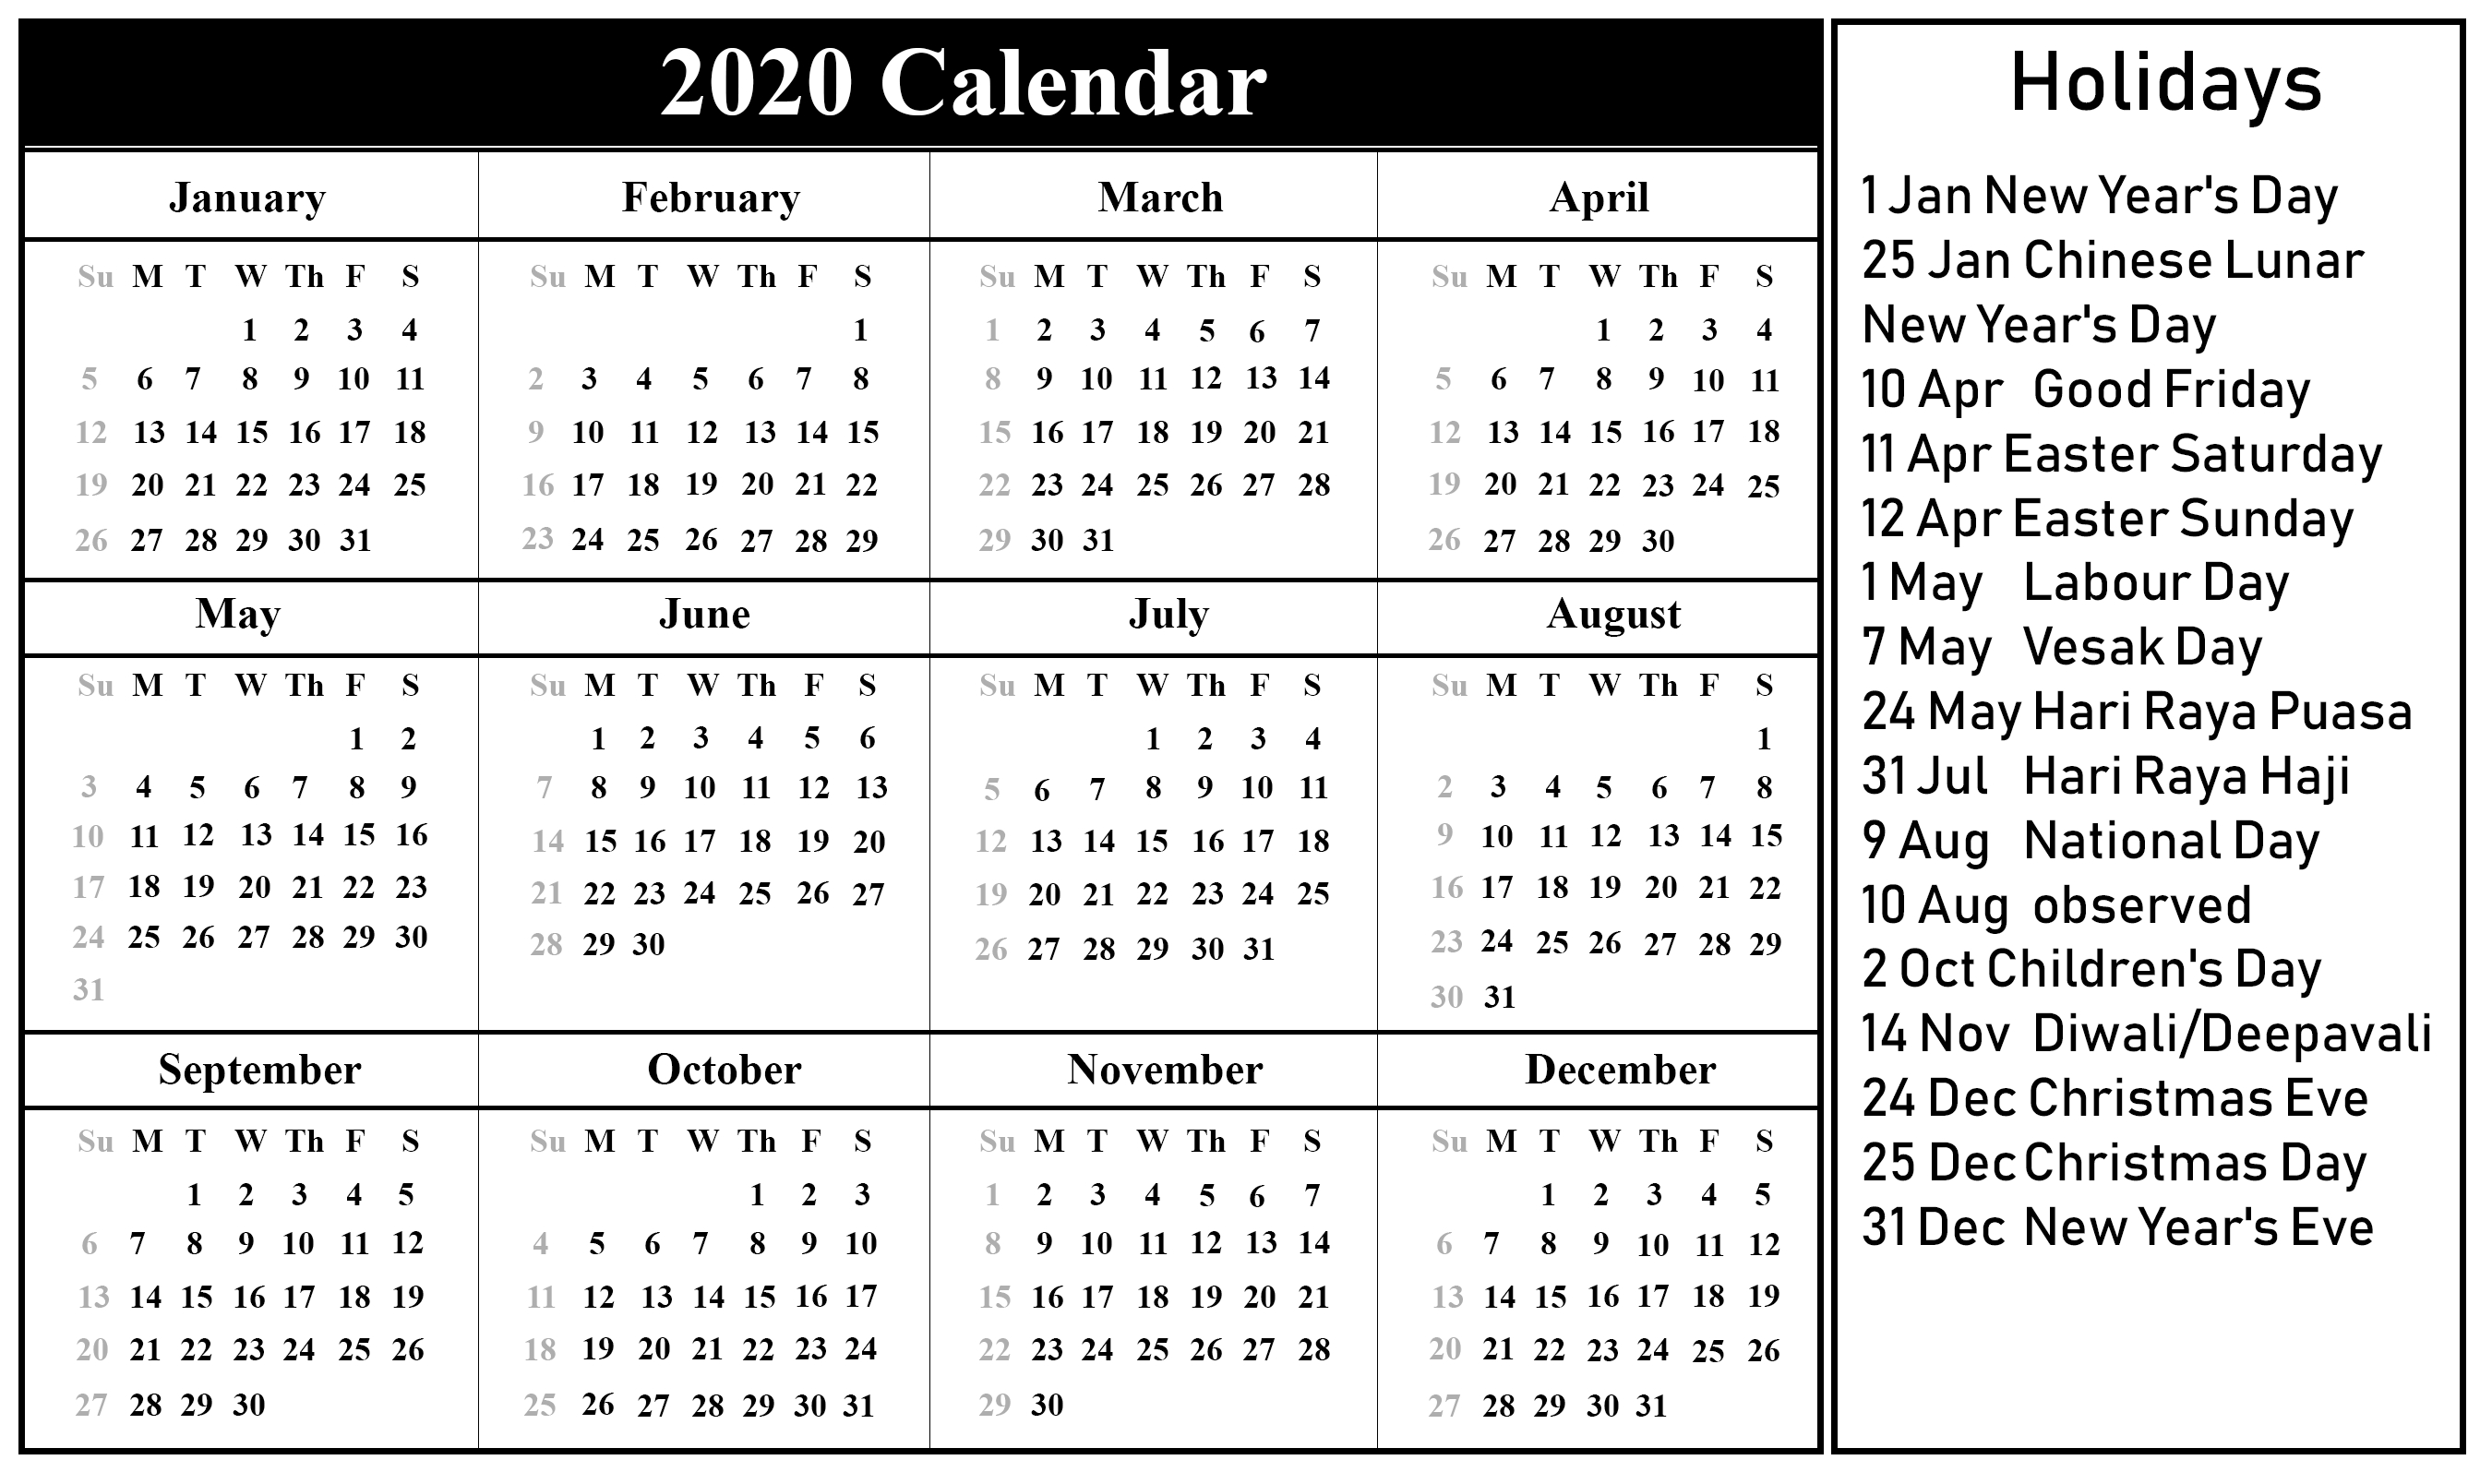 2020 Year Calendar With Holidays - Firuse.rsd7 2020 Calendar With School Holidays Printable